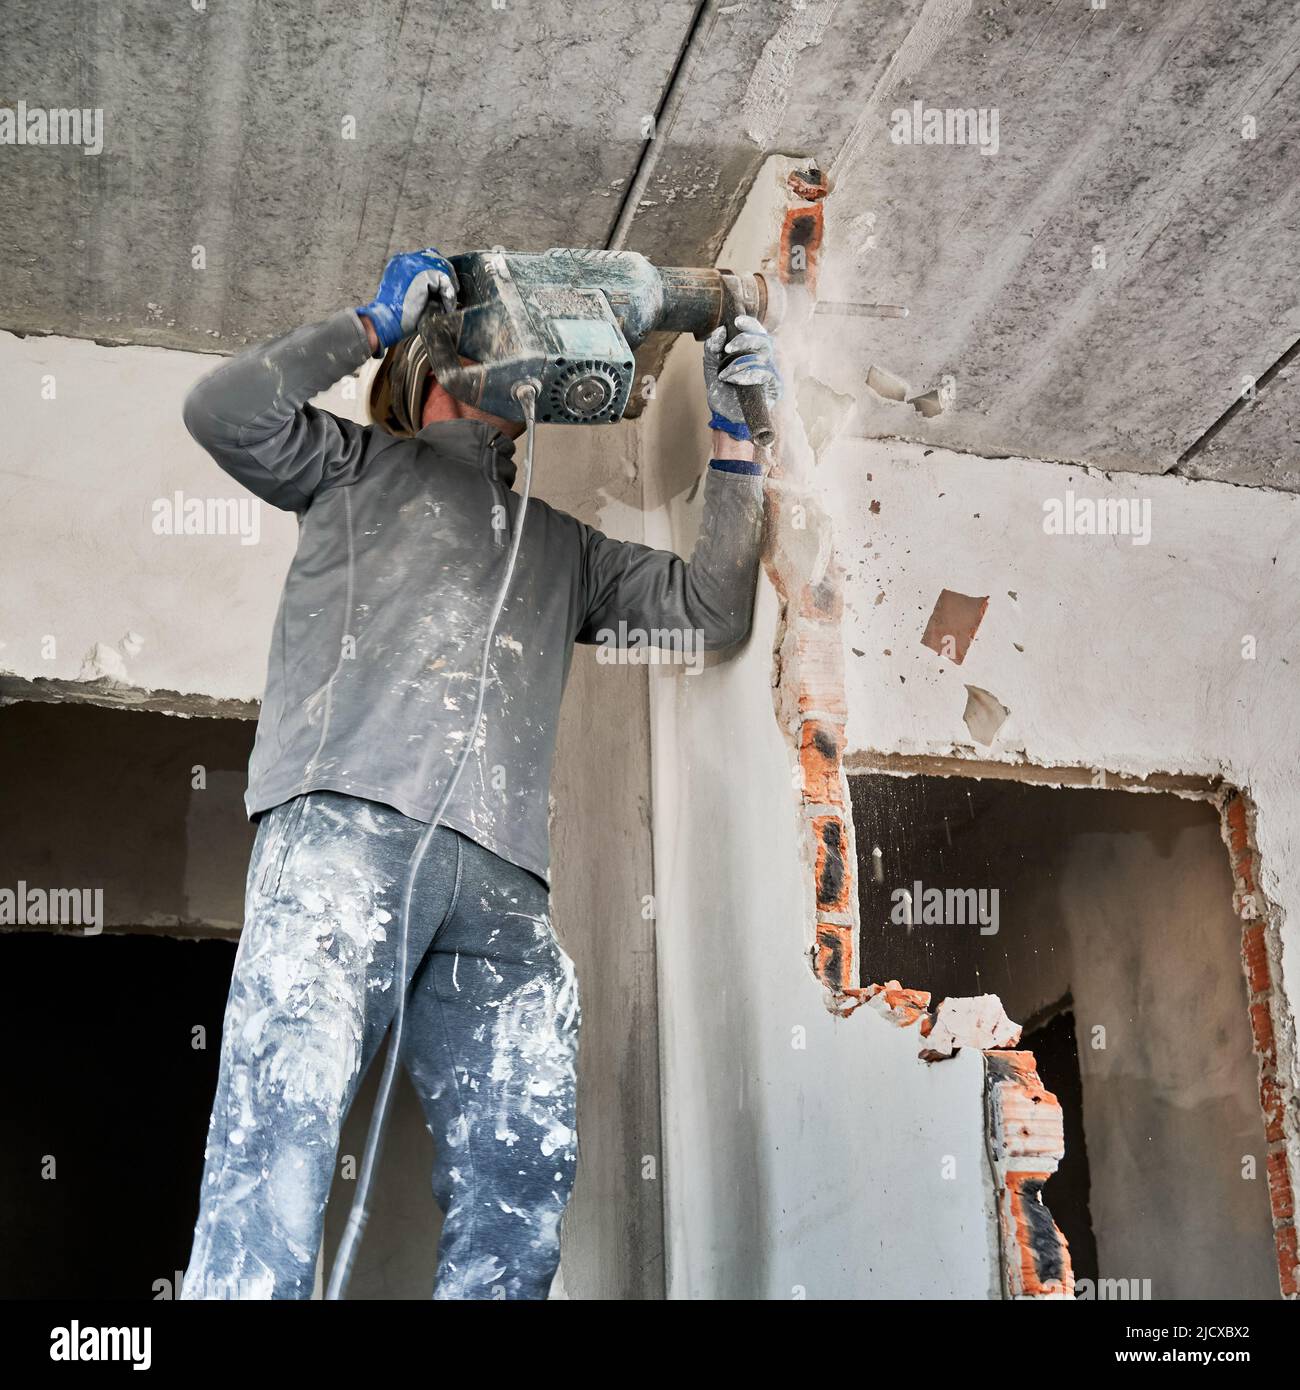 Dismantler stürzt im Aufprallmodus durch Perforator in die Zwischenwand. Überholung mit Abriss der angrenzenden Wände, um den Wohnraum zu vergrößern. Stockfoto